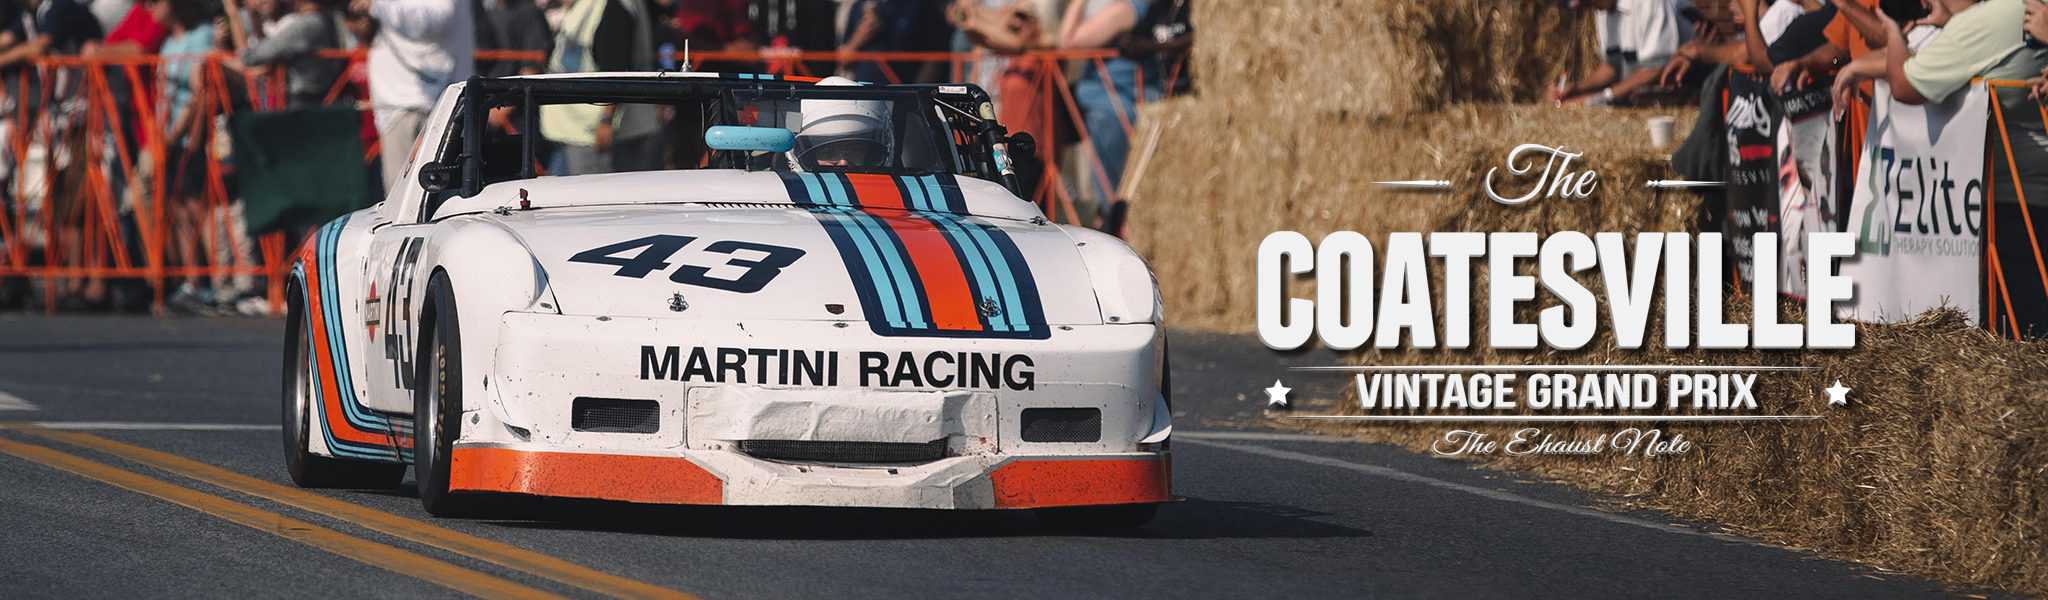 The Coatesville Vintage Grand Prix | Pure sound